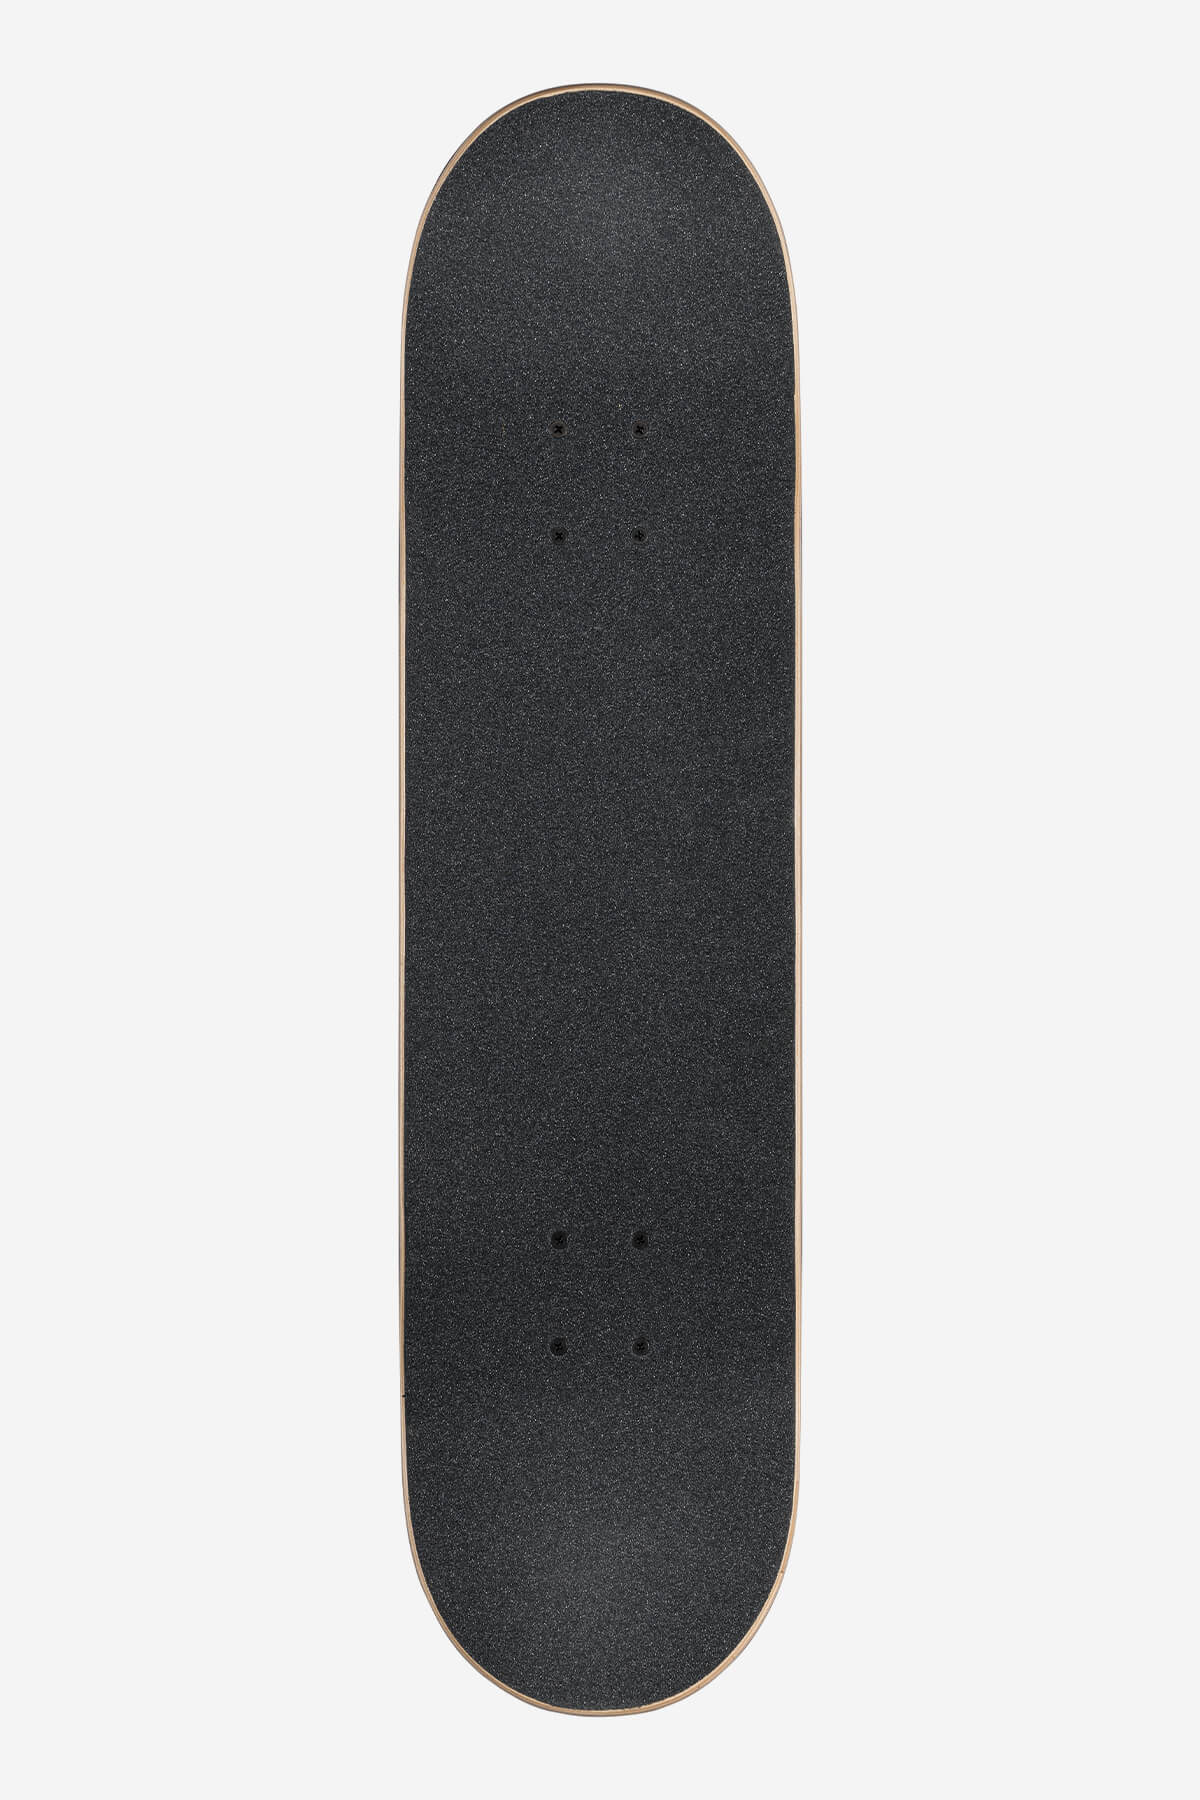 g1 lineform olive 8.0" complete skateboard